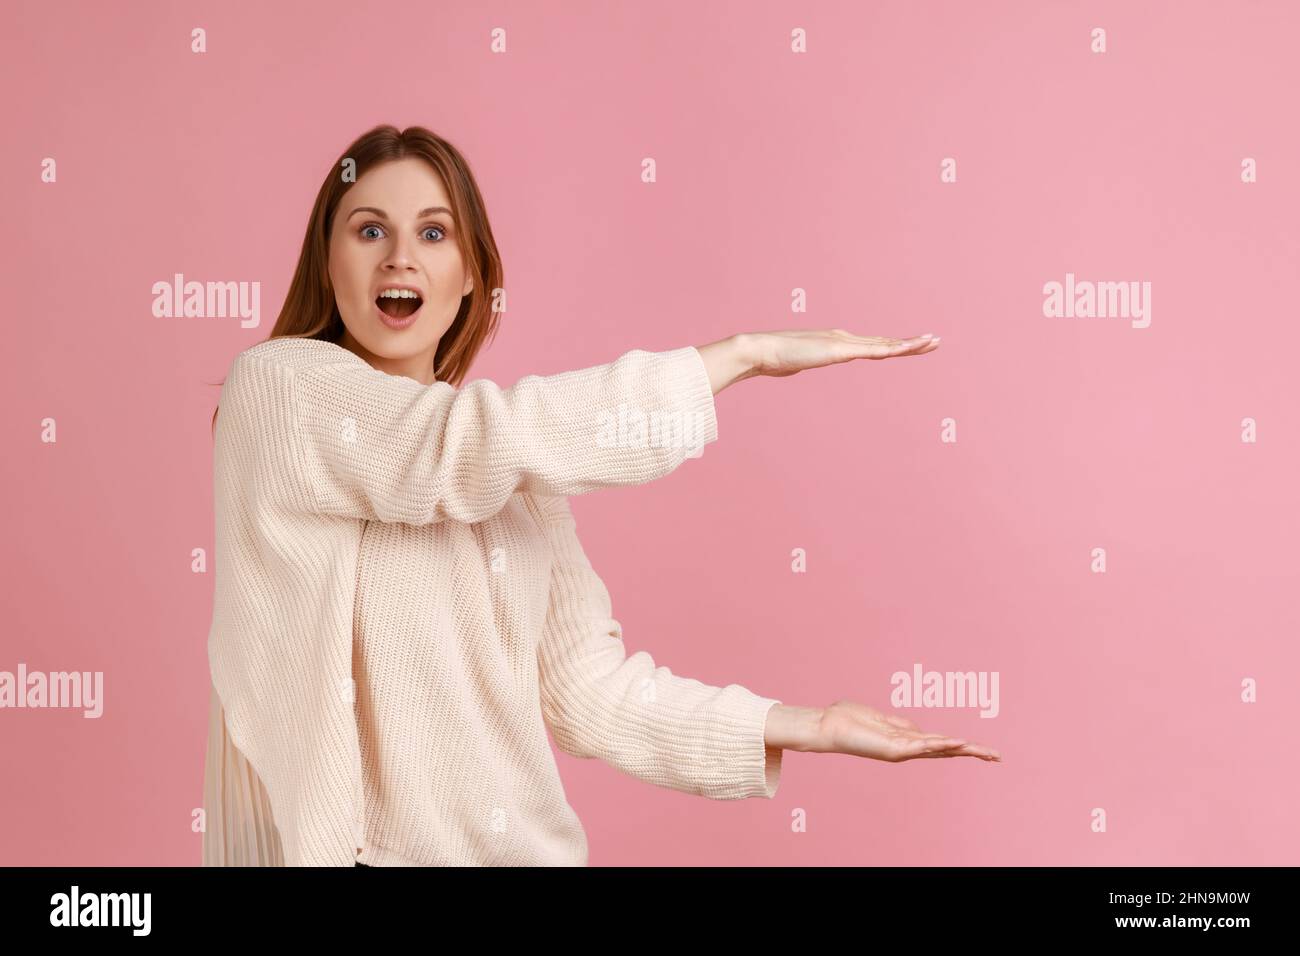 Porträt der aufgeregt erstaunt schöne blonde Frau präsentiert Bereich zwischen den Händen für Werbung, zeigt riesige Größe, trägt weißen Pullover. Innenaufnahme des Studios isoliert auf rosa Hintergrund. Stockfoto